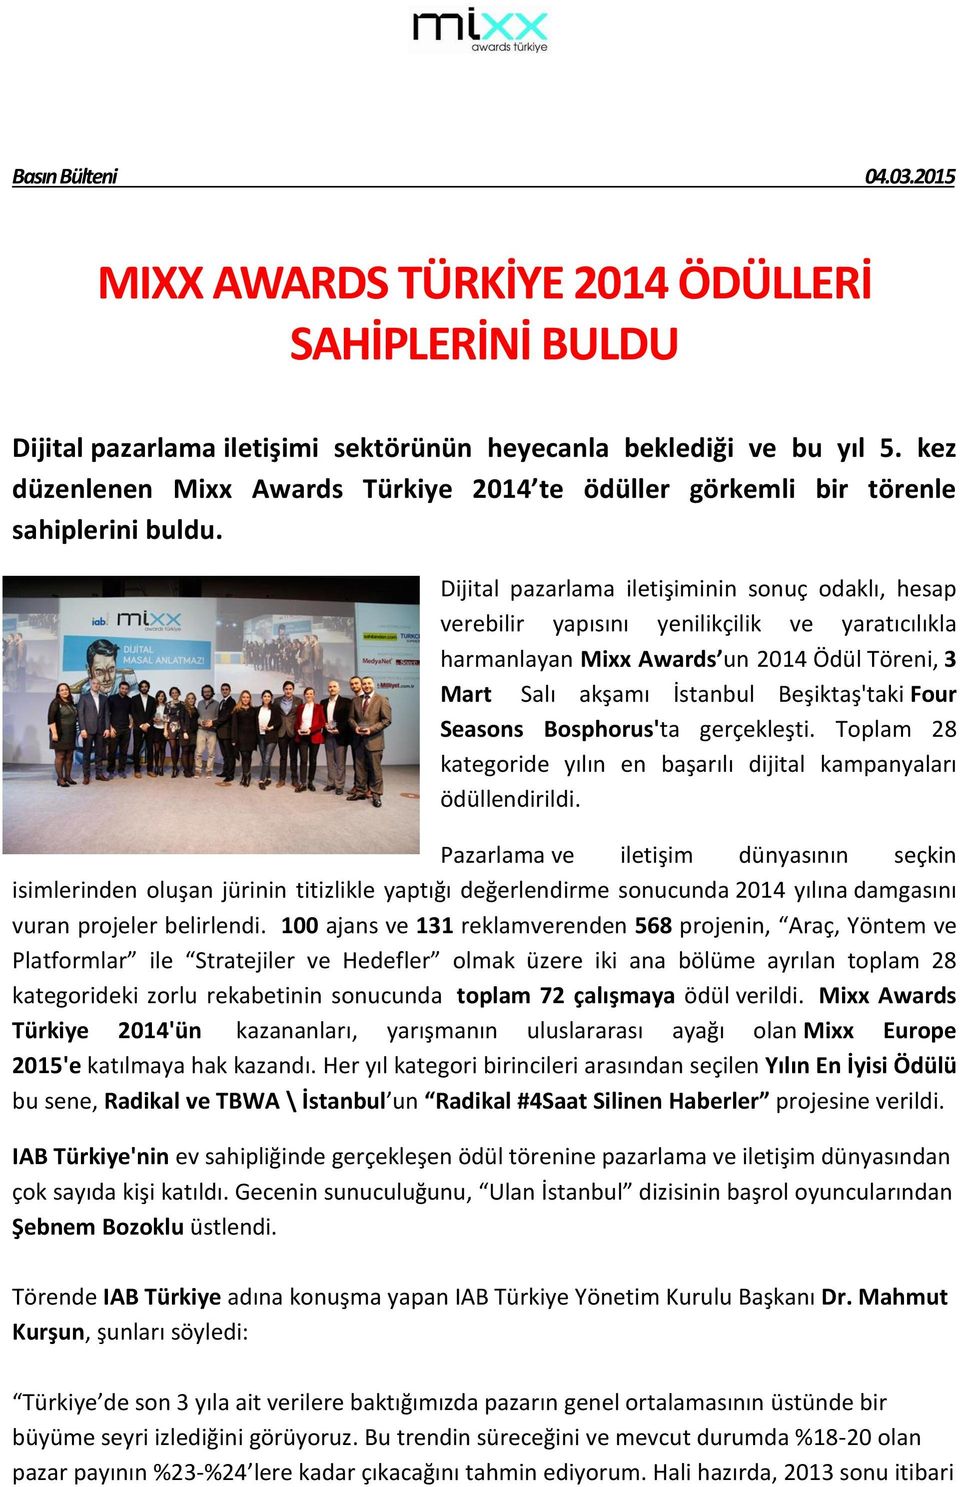 Dijital pazarlama iletişiminin sonuç odaklı, hesap verebilir yapısını yenilikçilik ve yaratıcılıkla harmanlayan Mixx Awards un 2014 Ödül Töreni, 3 Mart Salı akşamı İstanbul Beşiktaş'taki Four Seasons